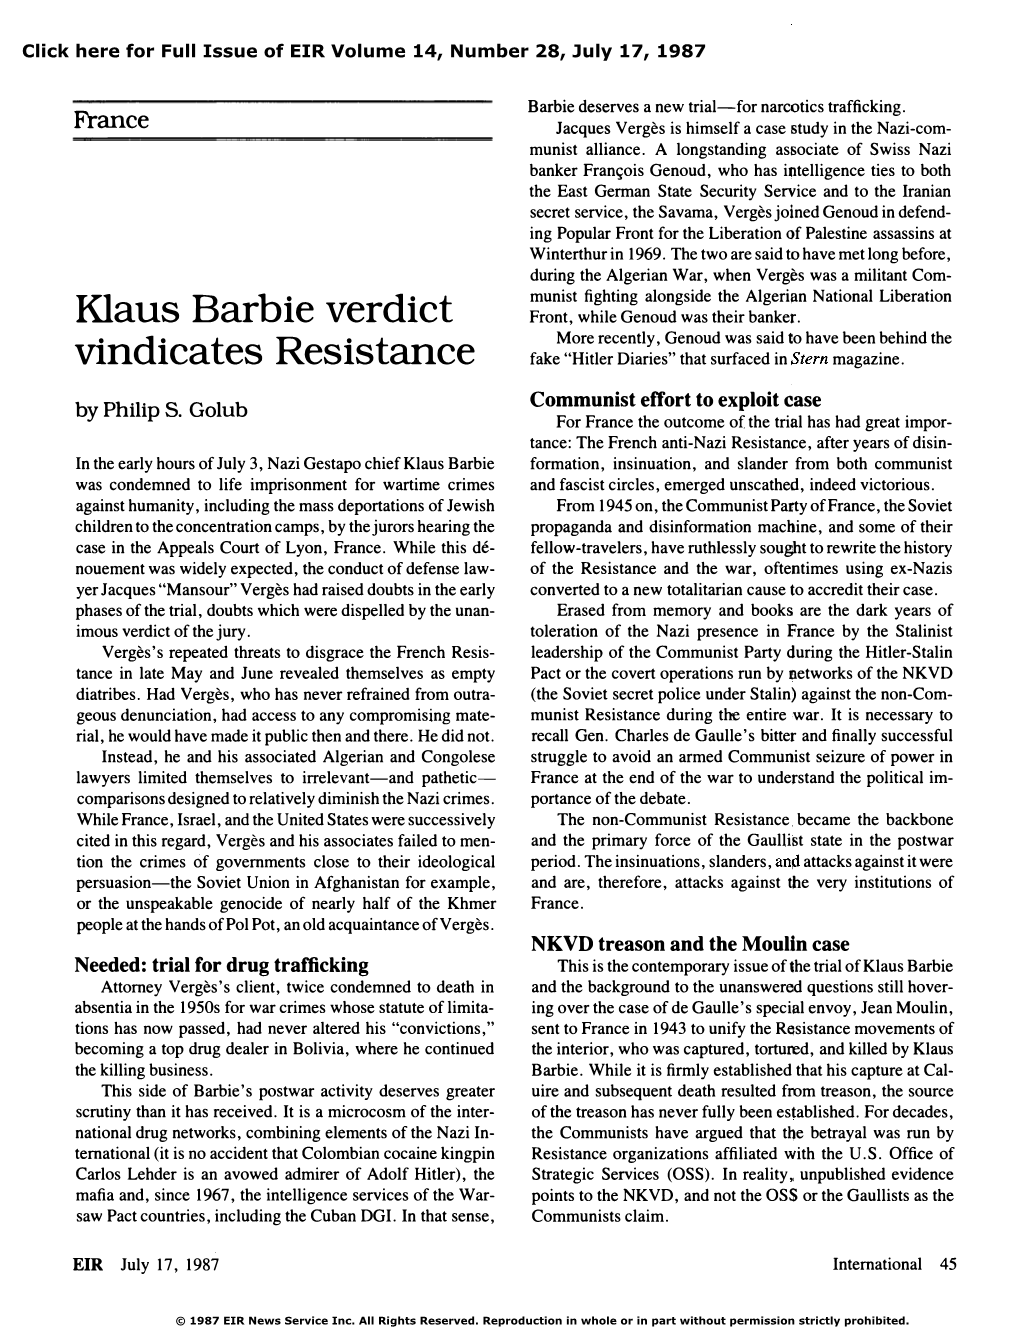 France: Klaus Barbie Verdict Vindicates Resistance